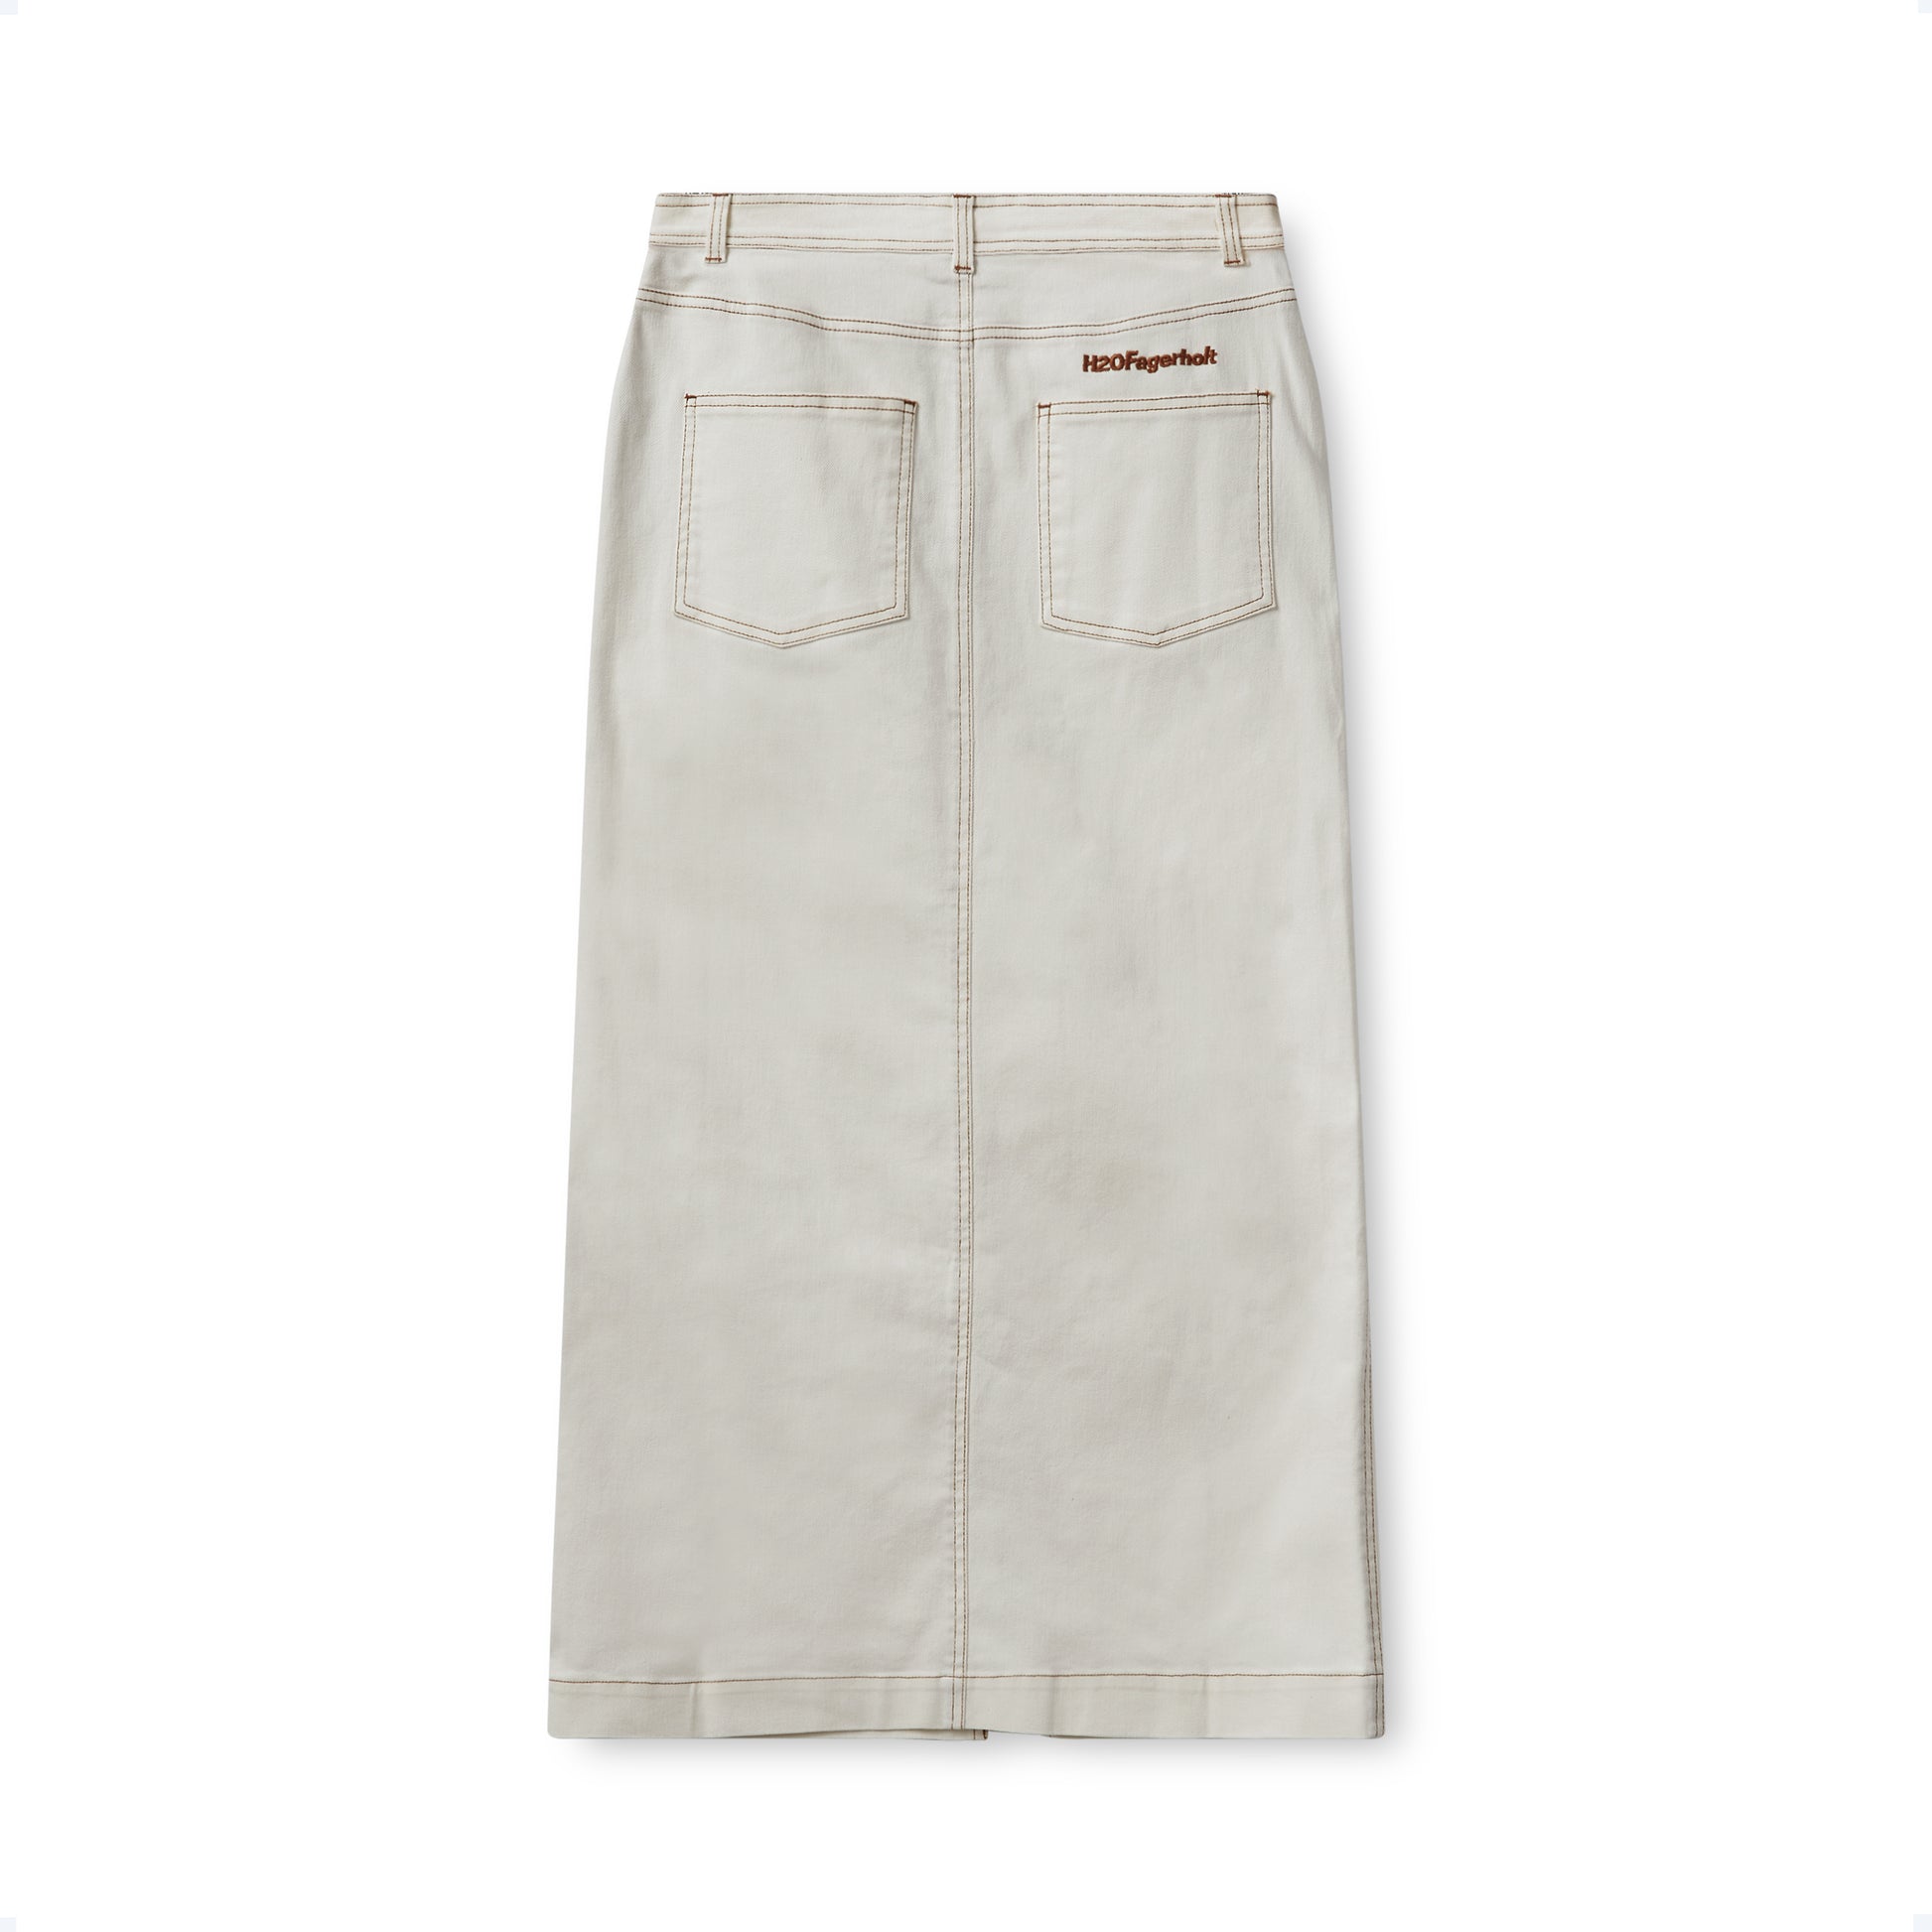 H2OFagerholt Classic Jeans Skirt Skirt